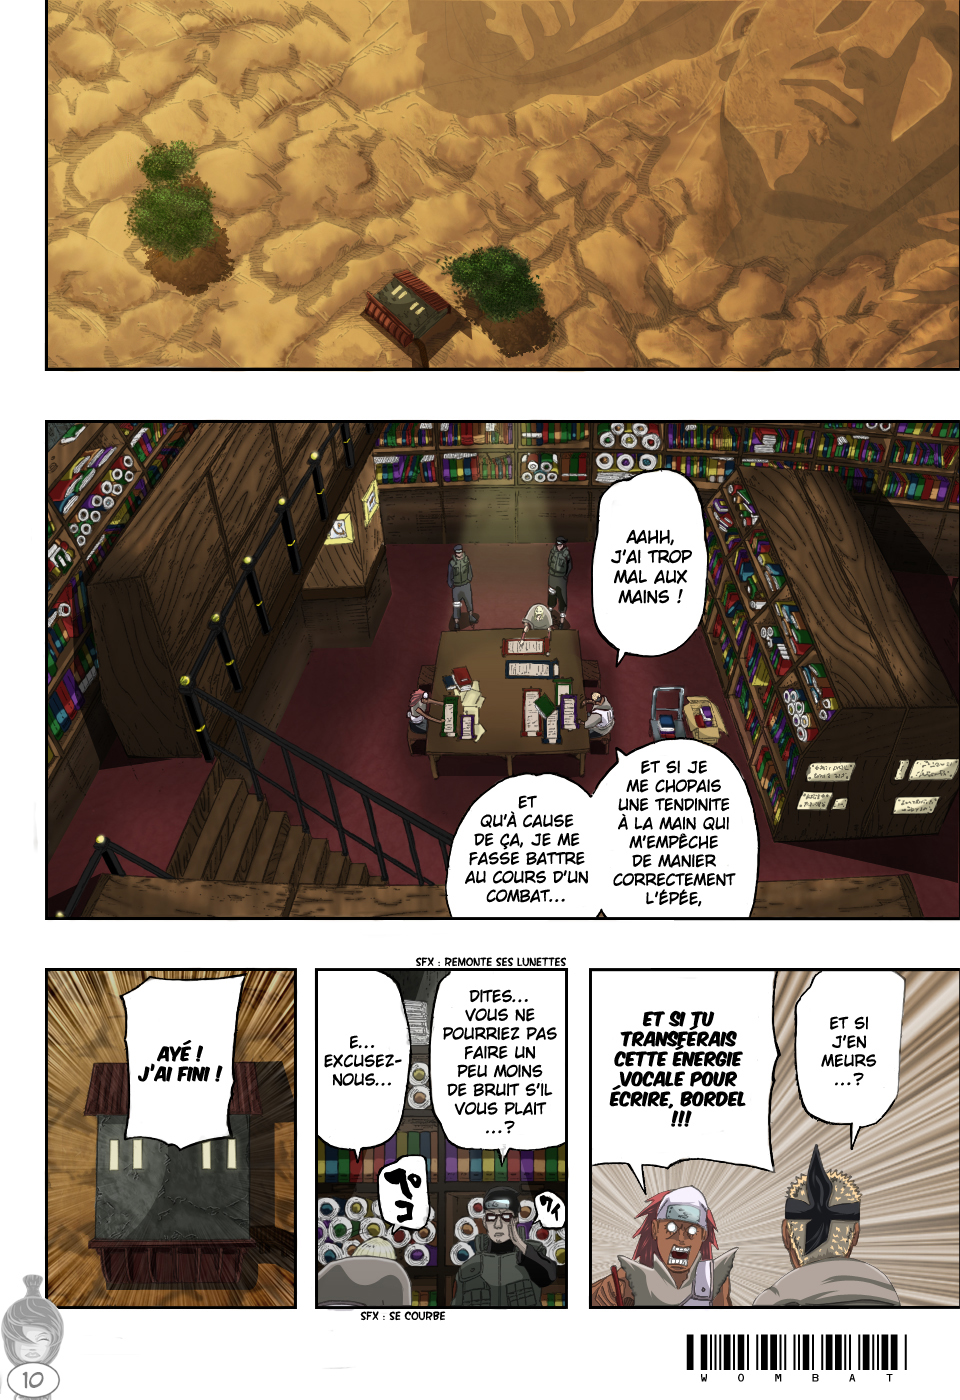 Naruto chapitre 456 colorisé - Page 10